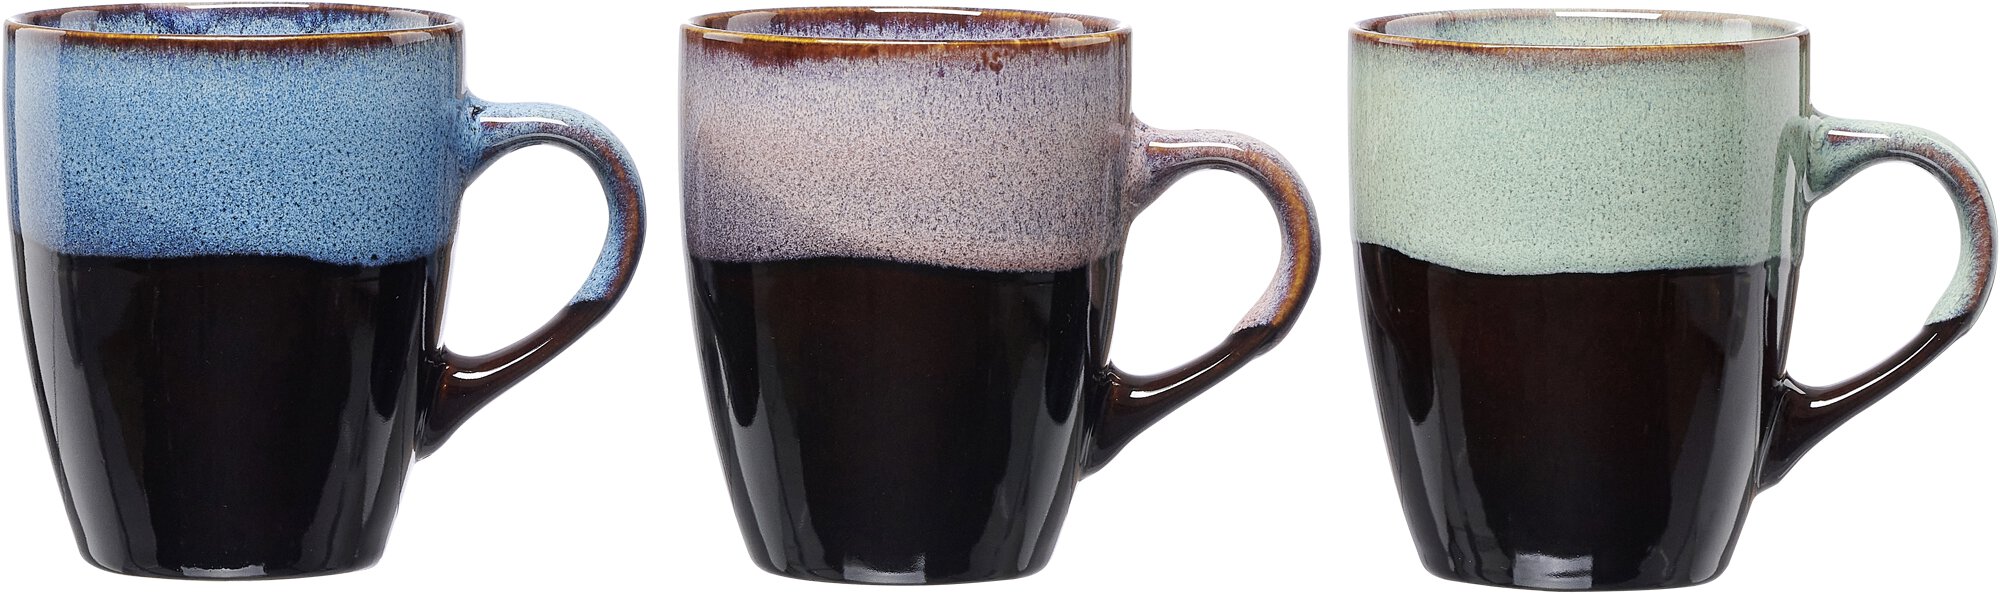 Kaffeebecher 380 ml Mongu 3-fach sortiert